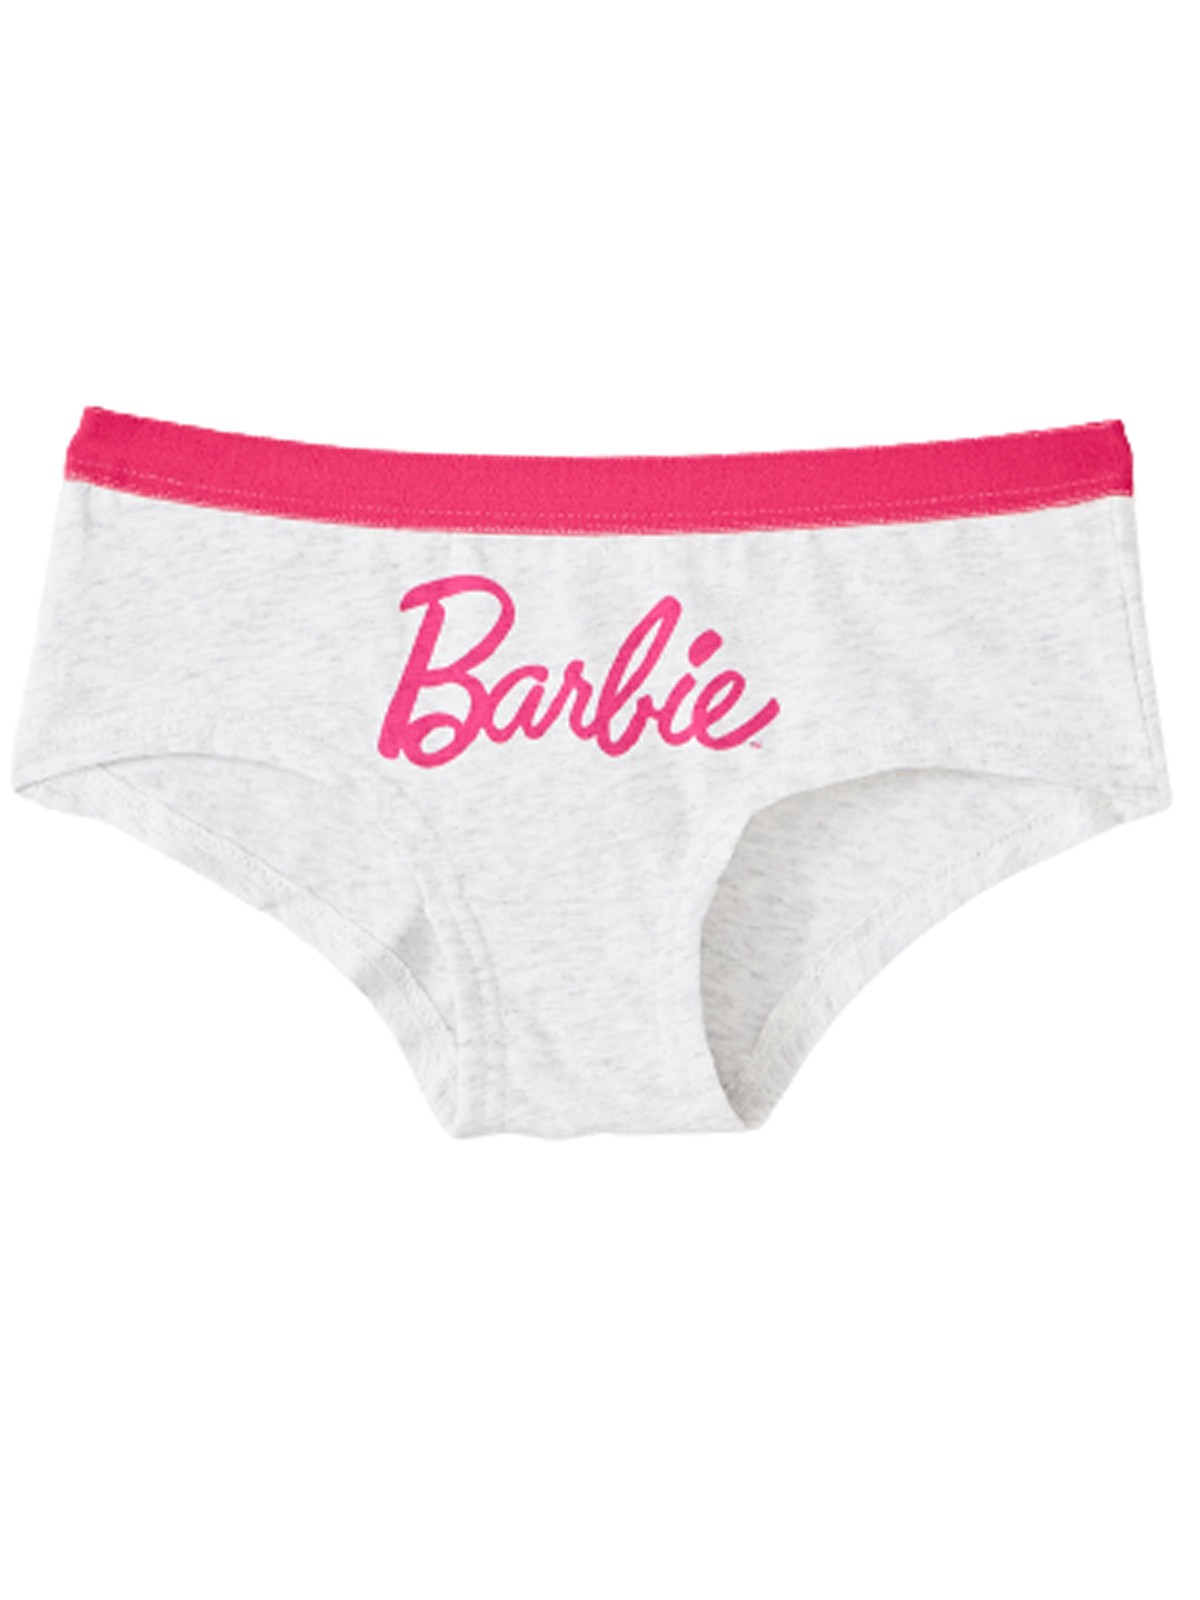 Barbie panties